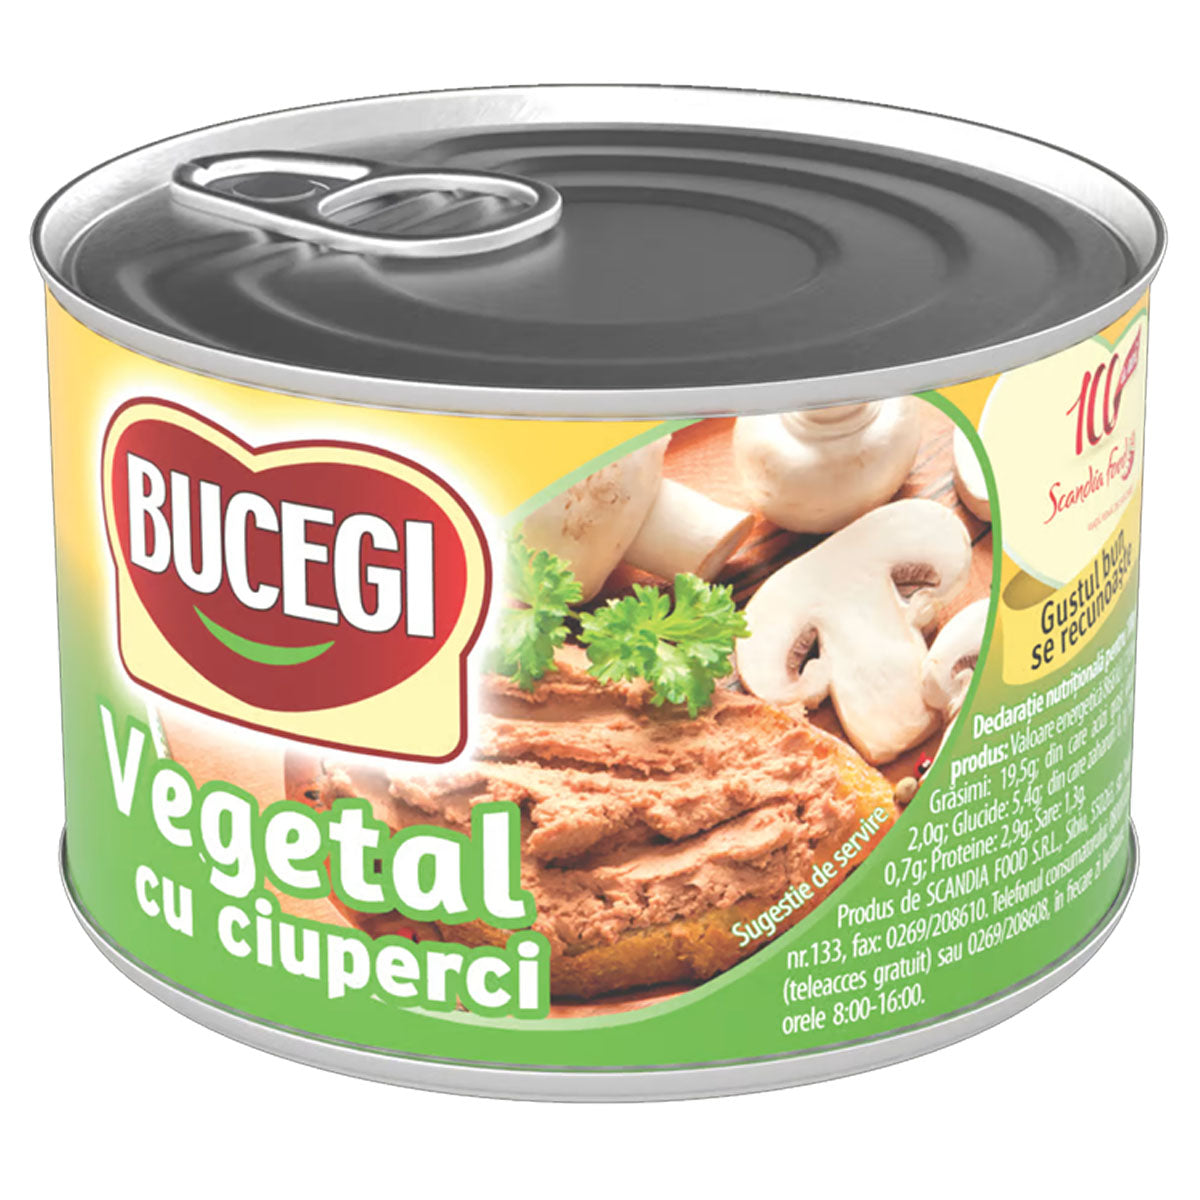 Bucegi - Vegetable Pate with Mushroom (Vegetal Ciuperci) - 200g - Continental Food Store